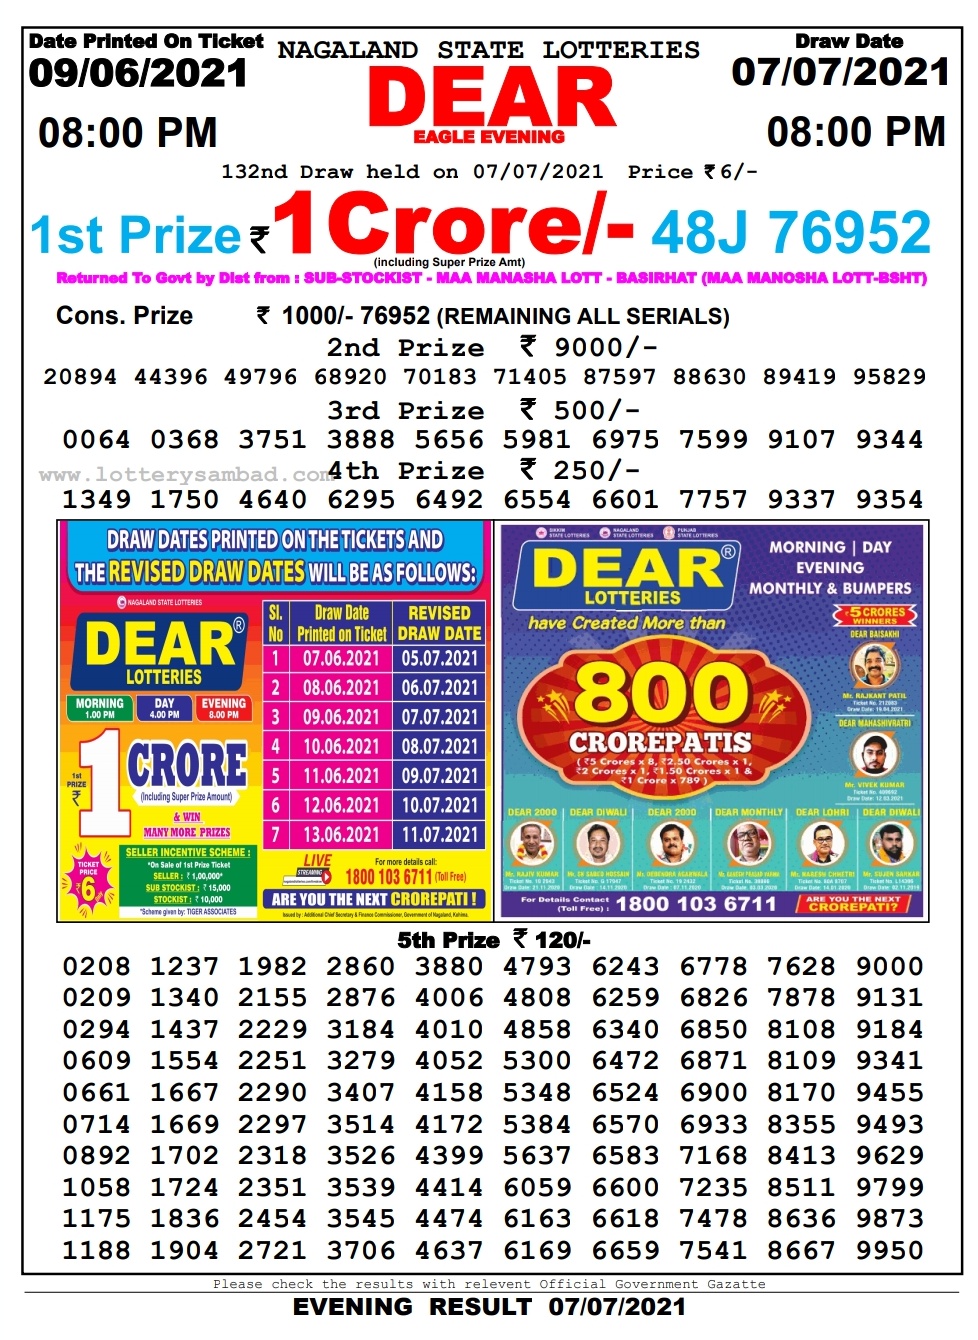 Dear lottery 08.00 pm 07-07-2021